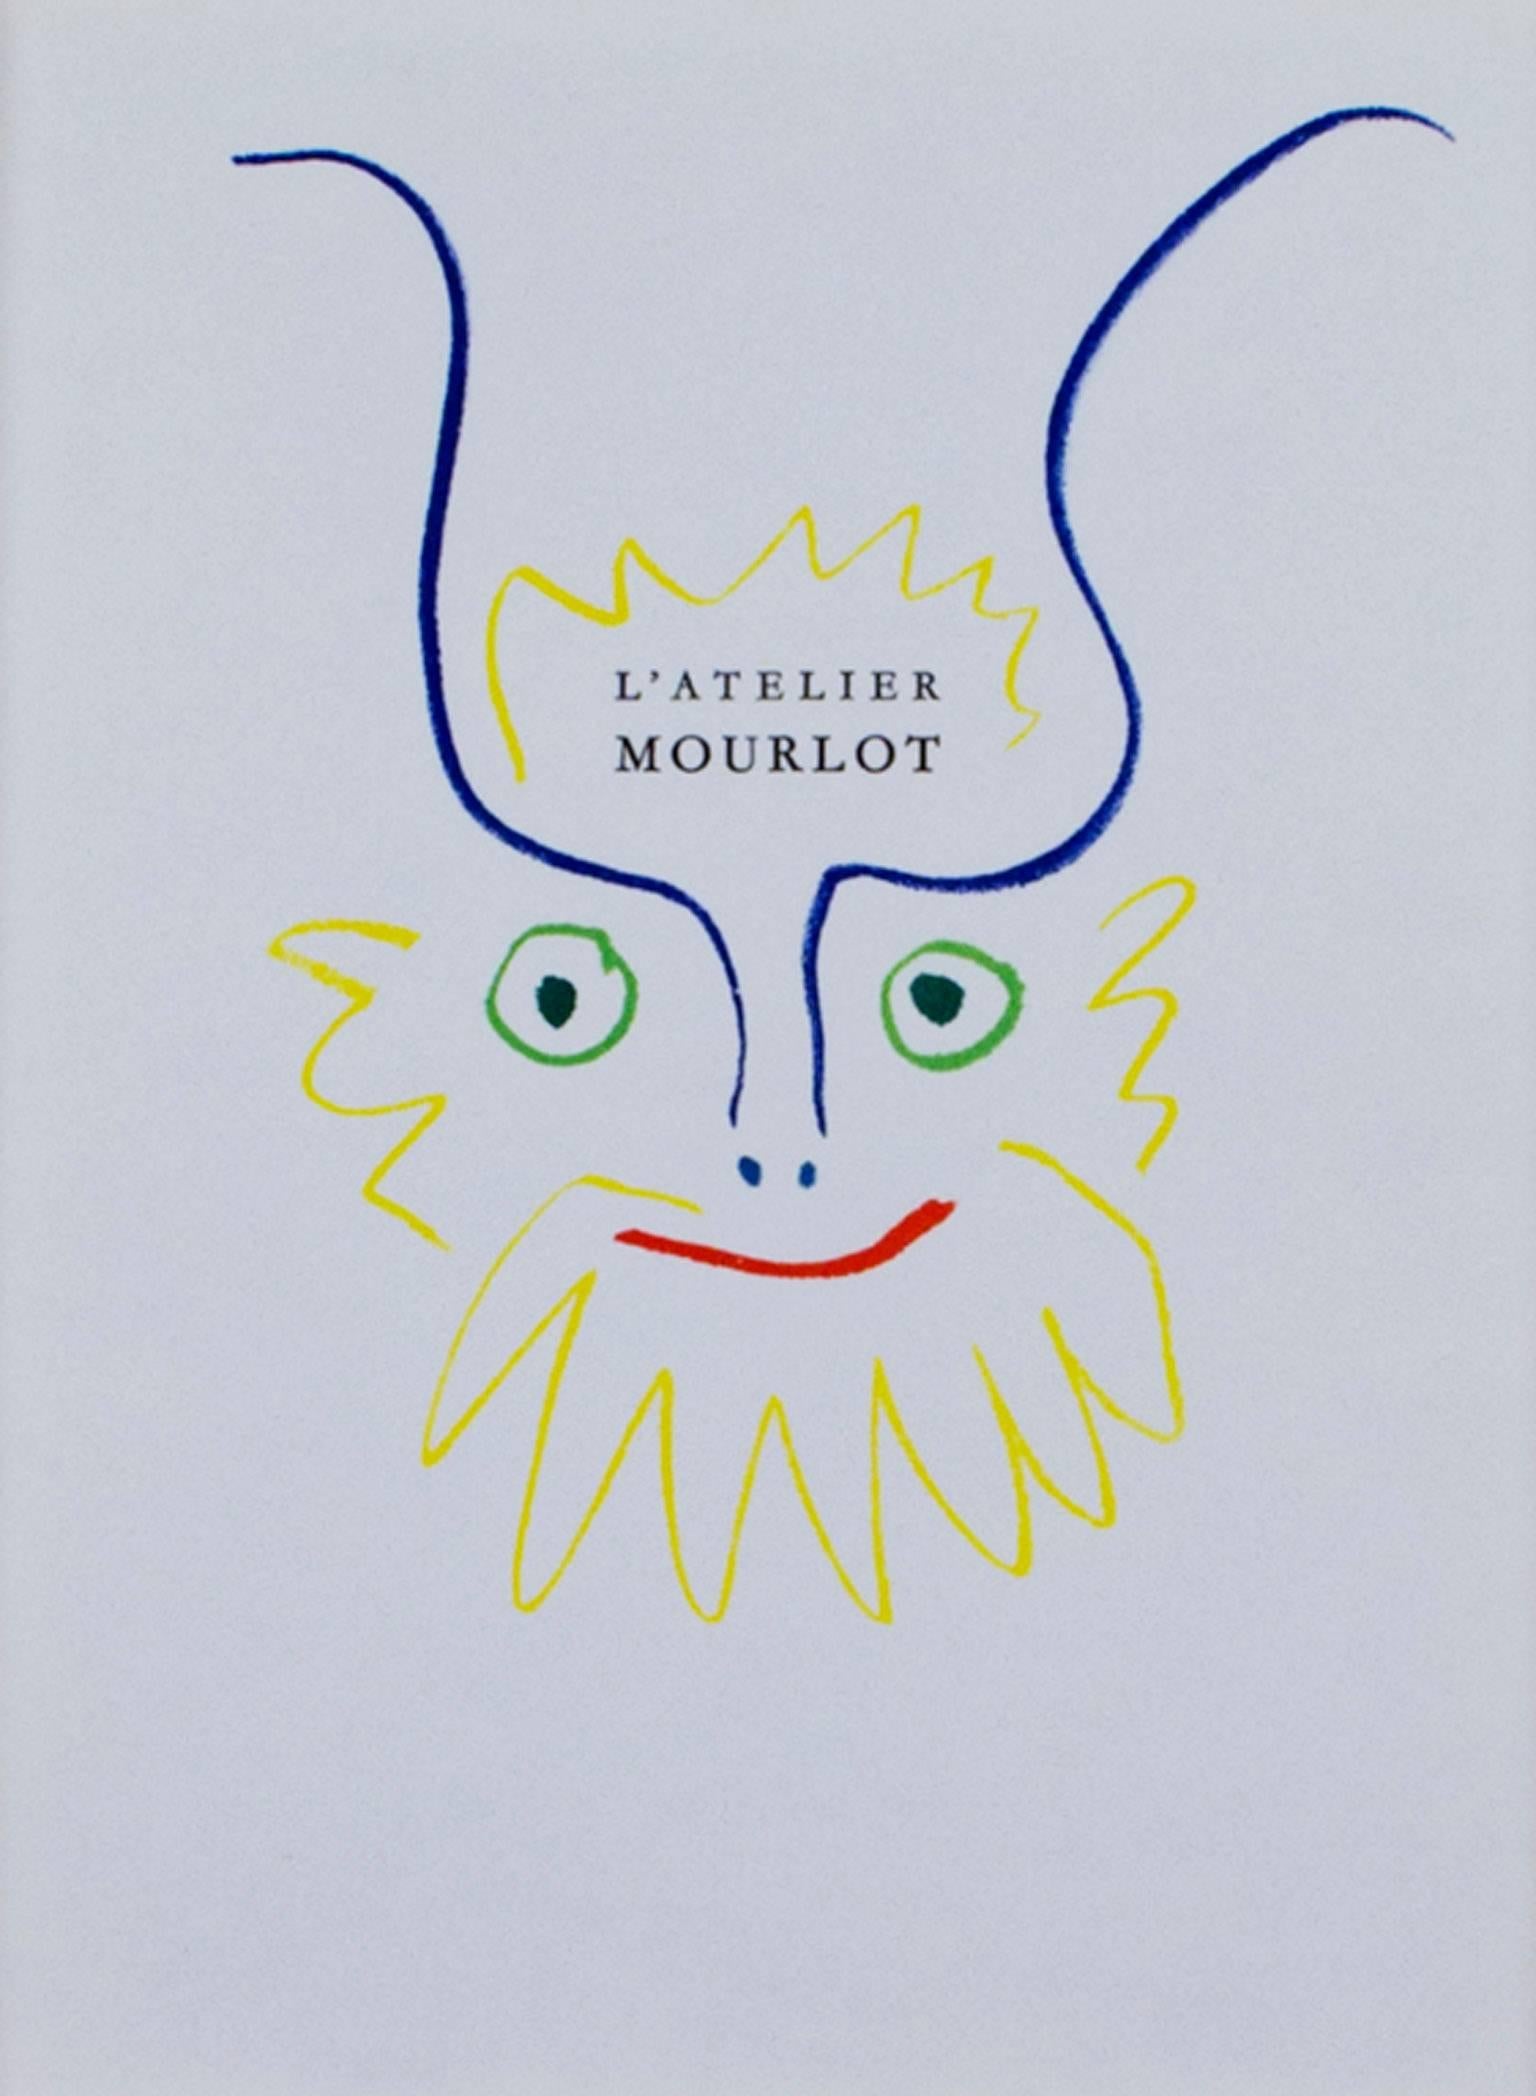 "L'Atelier Mourlot Titelblatt" ist eine originale Farblithographie von Pablo Picasso. Es zeigt ein vereinfachtes lächelndes Gesicht in den Farben Blau, Rot, Gelb und Grün mit dem Text "Mourlot Workshop" in Schwarz über dem Gesicht. Dieses Bild wurde